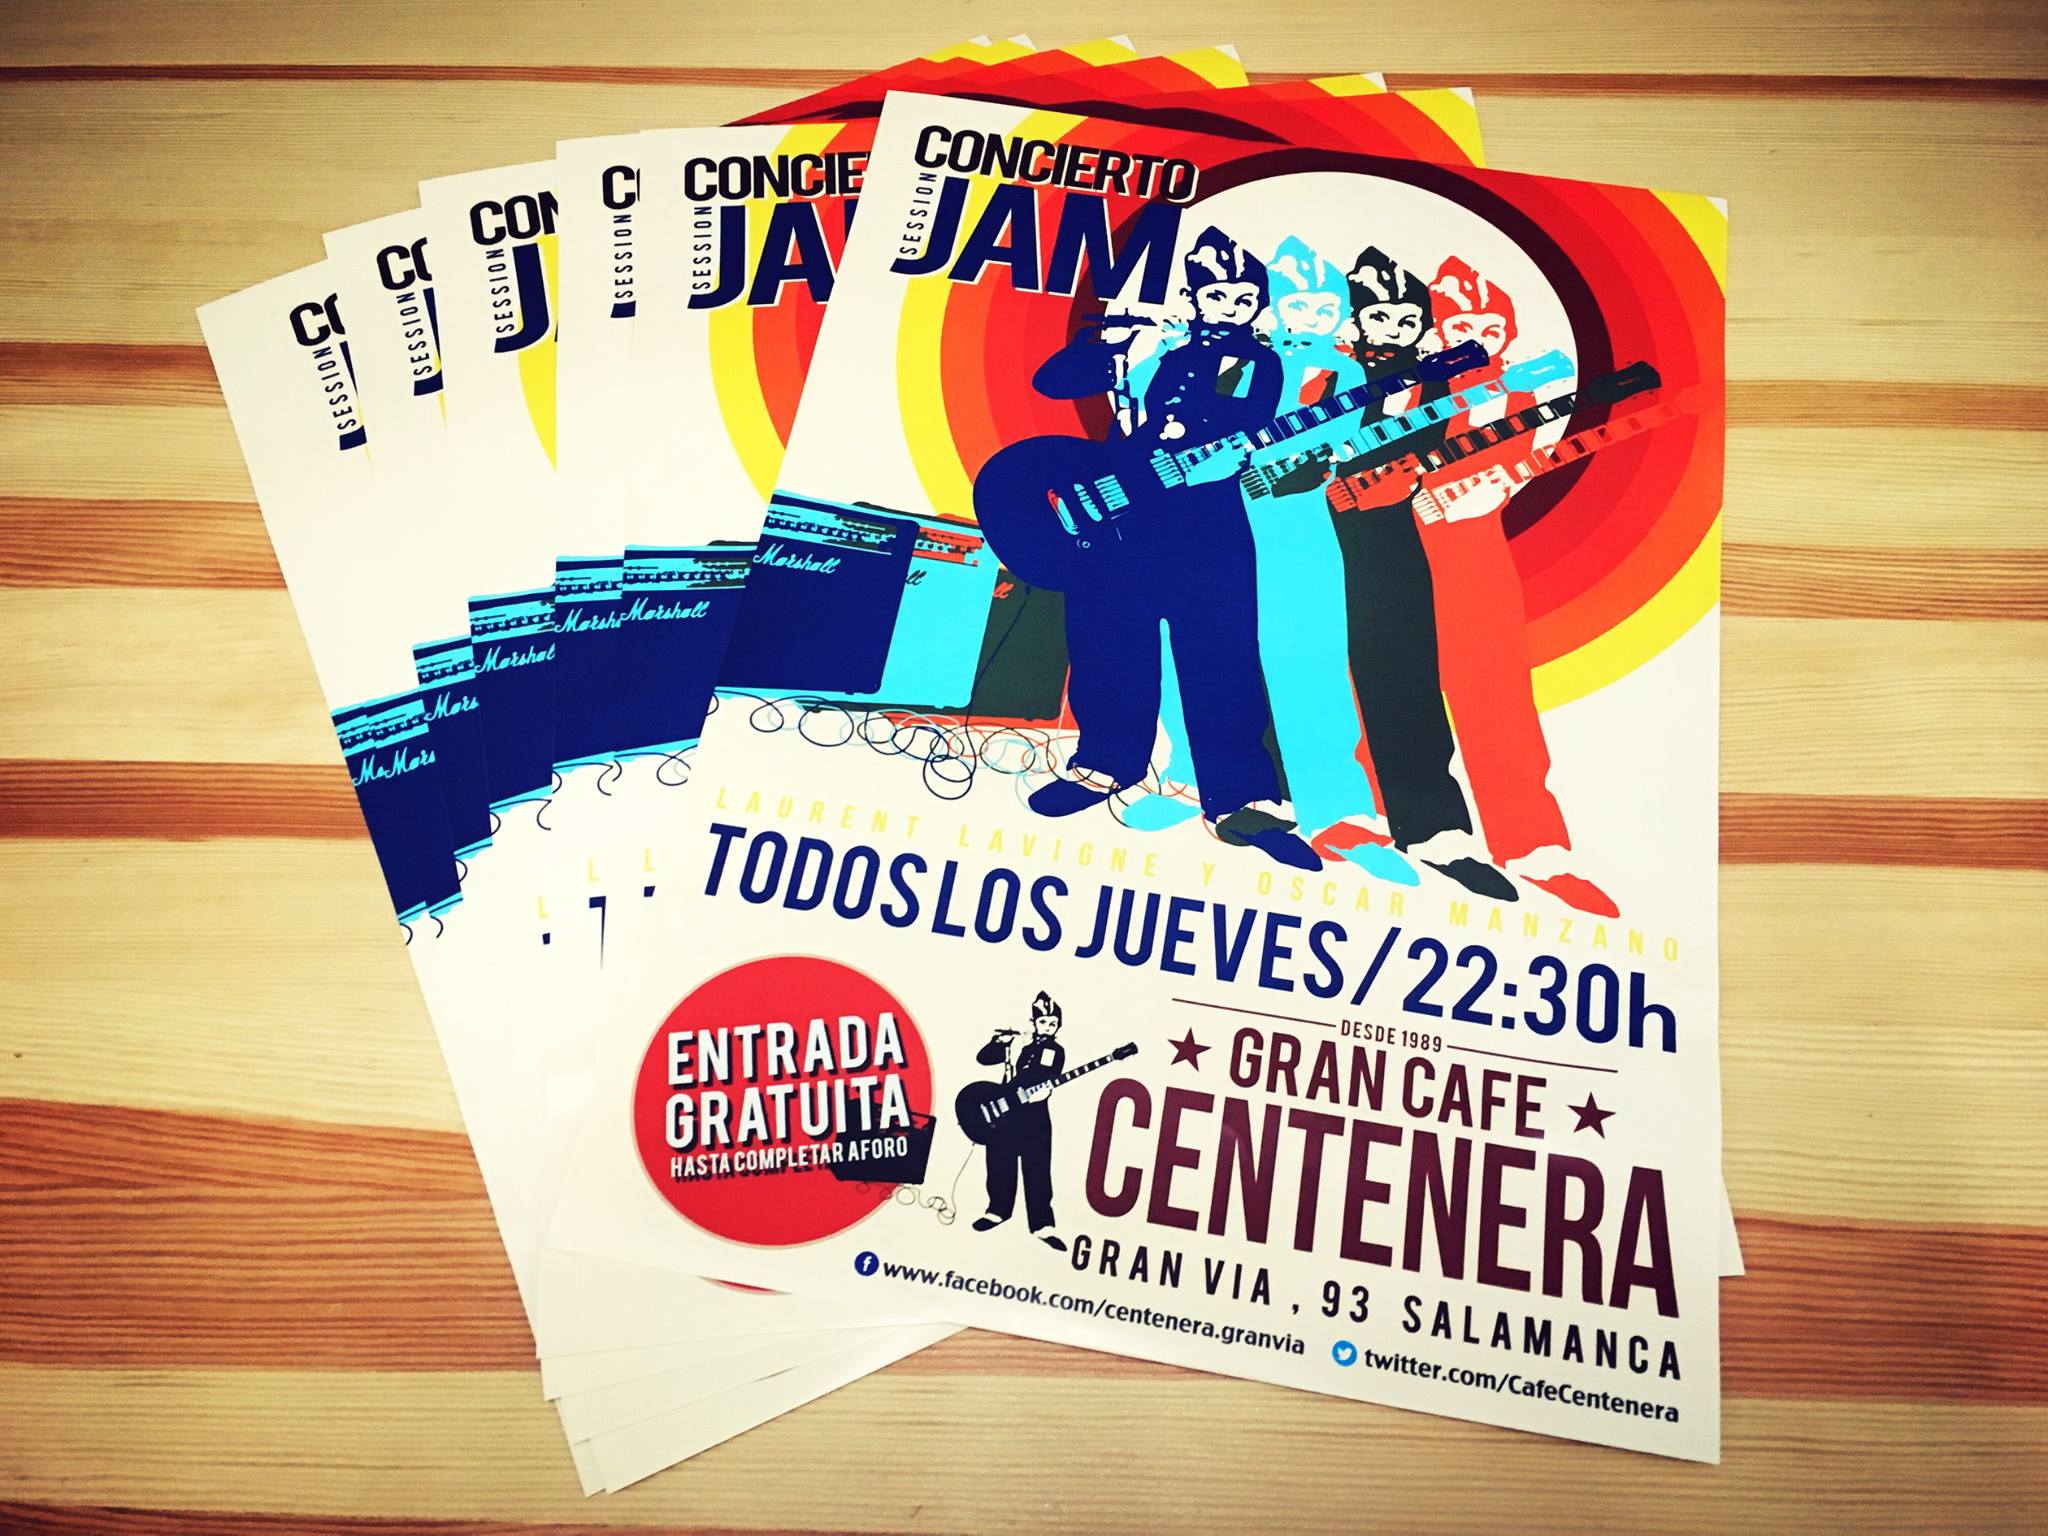 Concierto Jam Session Centenera Salamanca 2017-2018